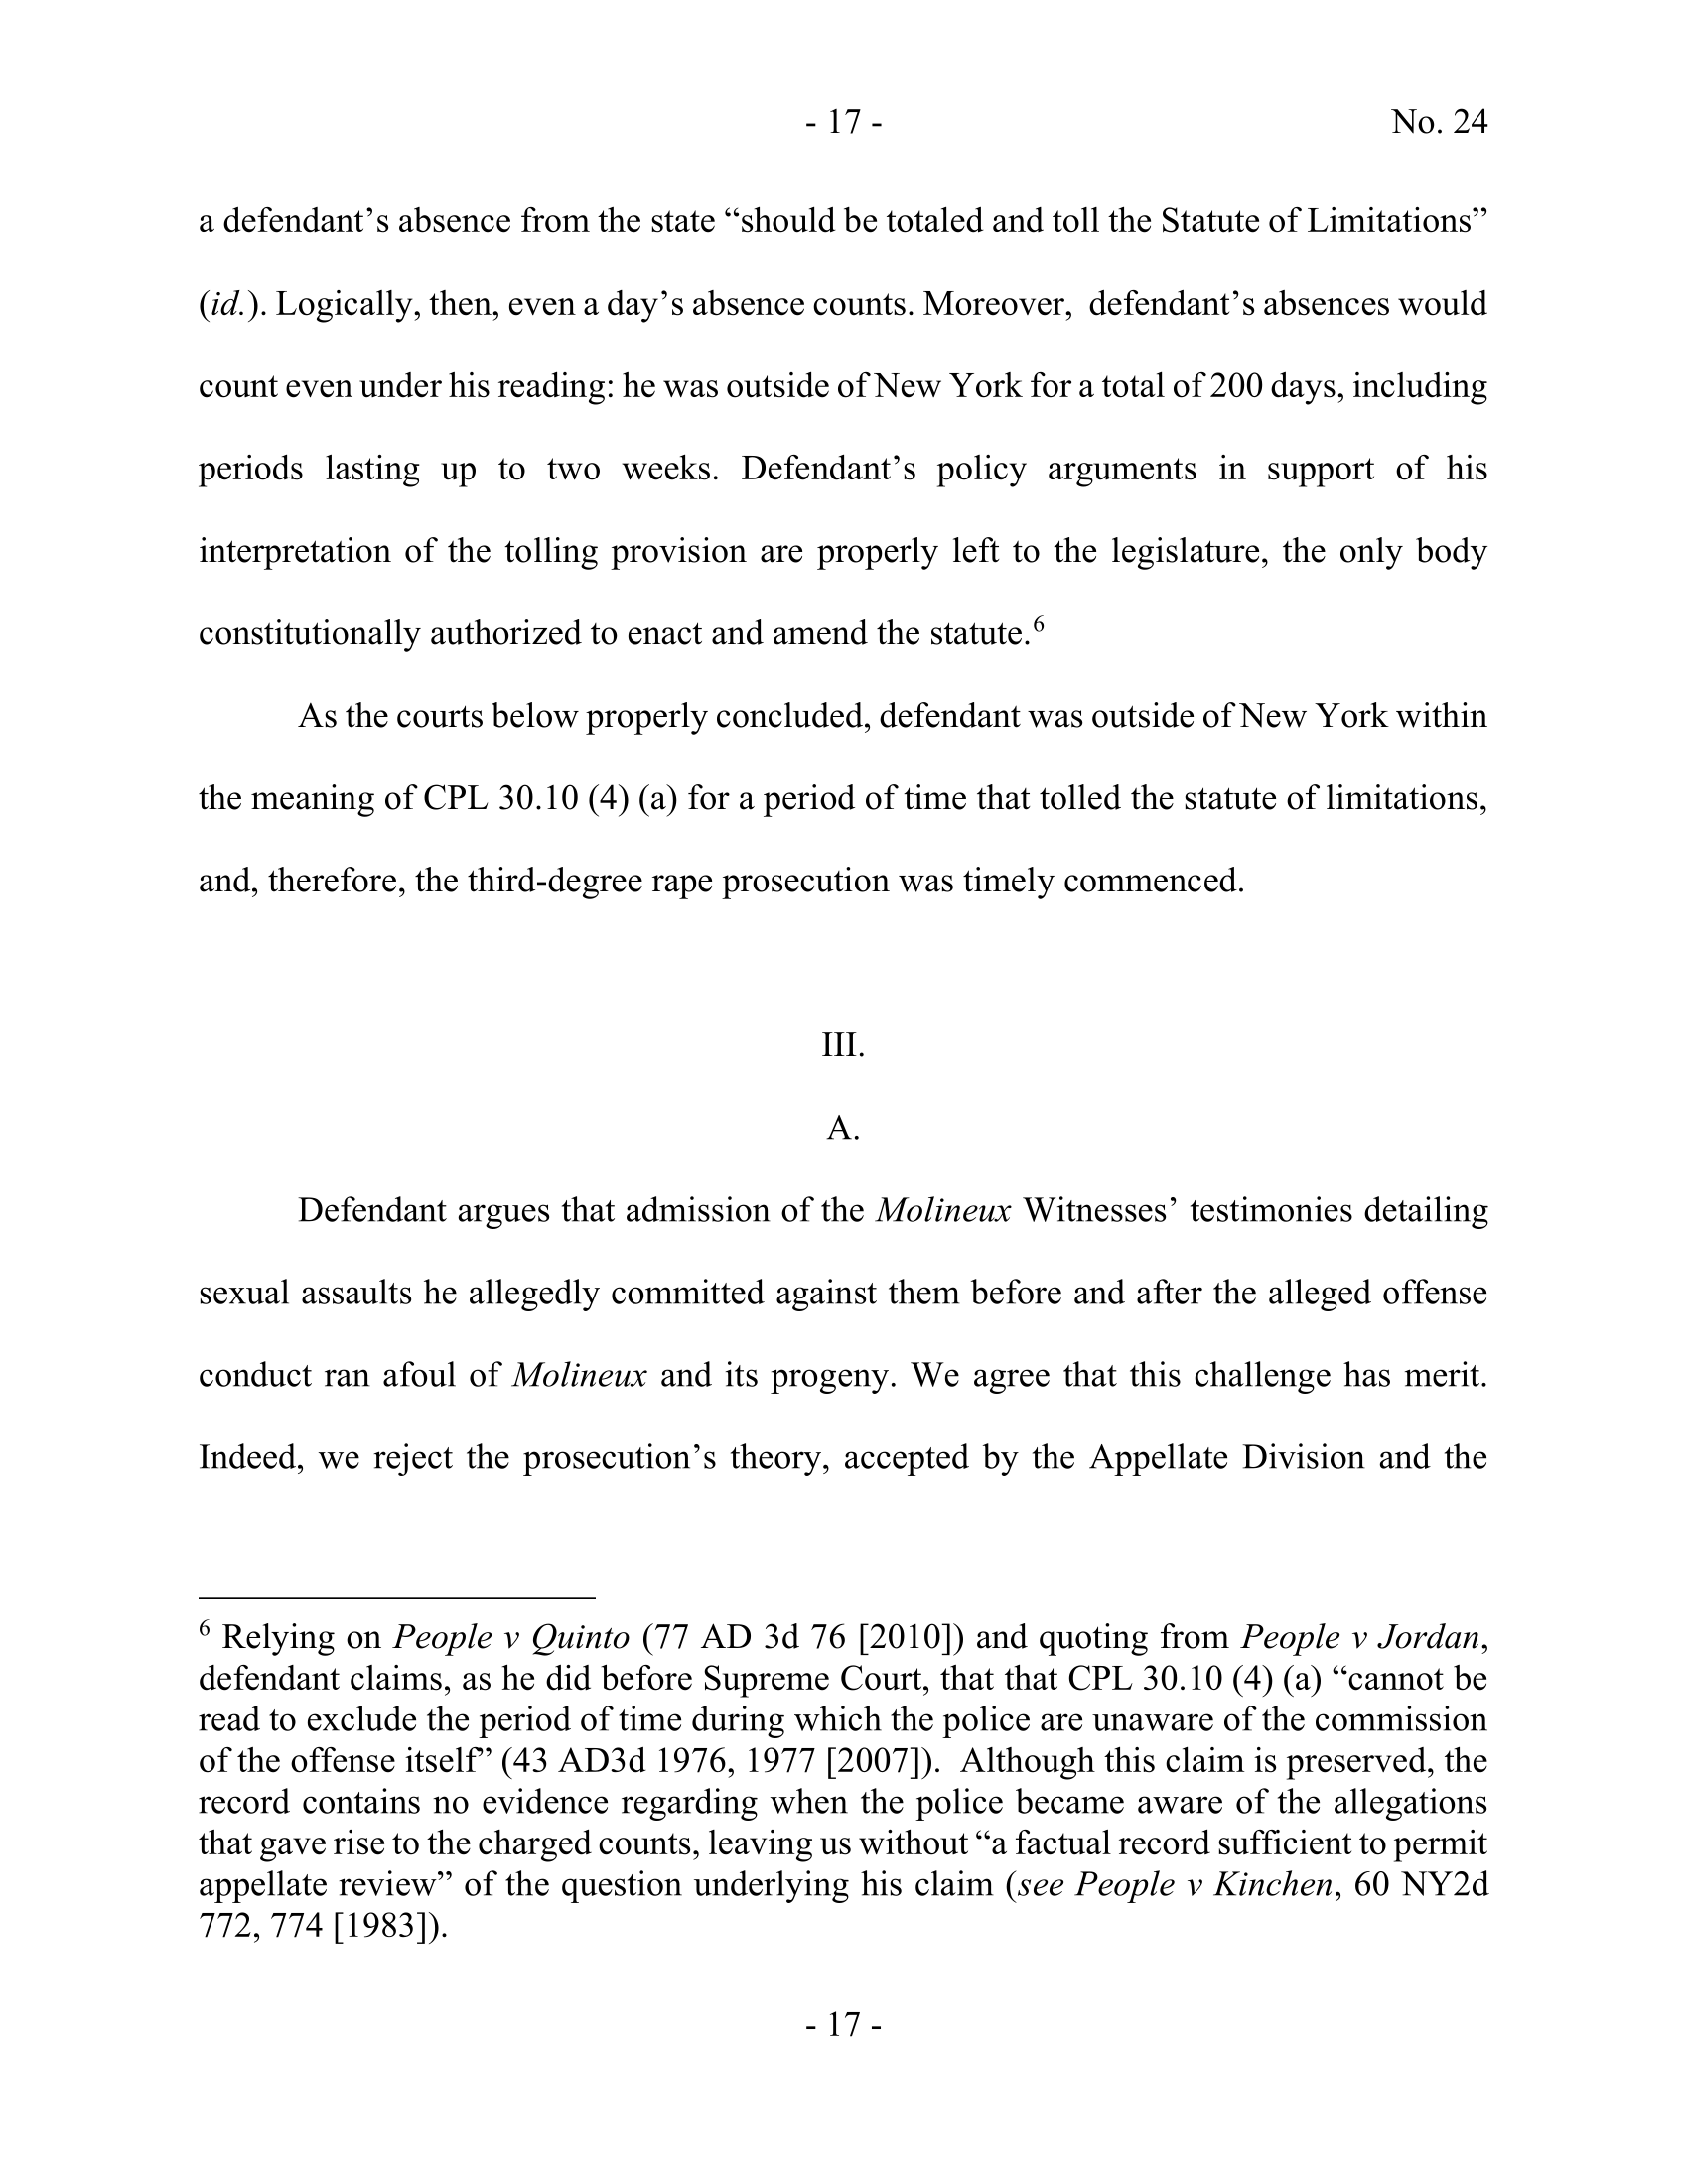 Seite 17 eines undefinierten PDF-Dokuments.